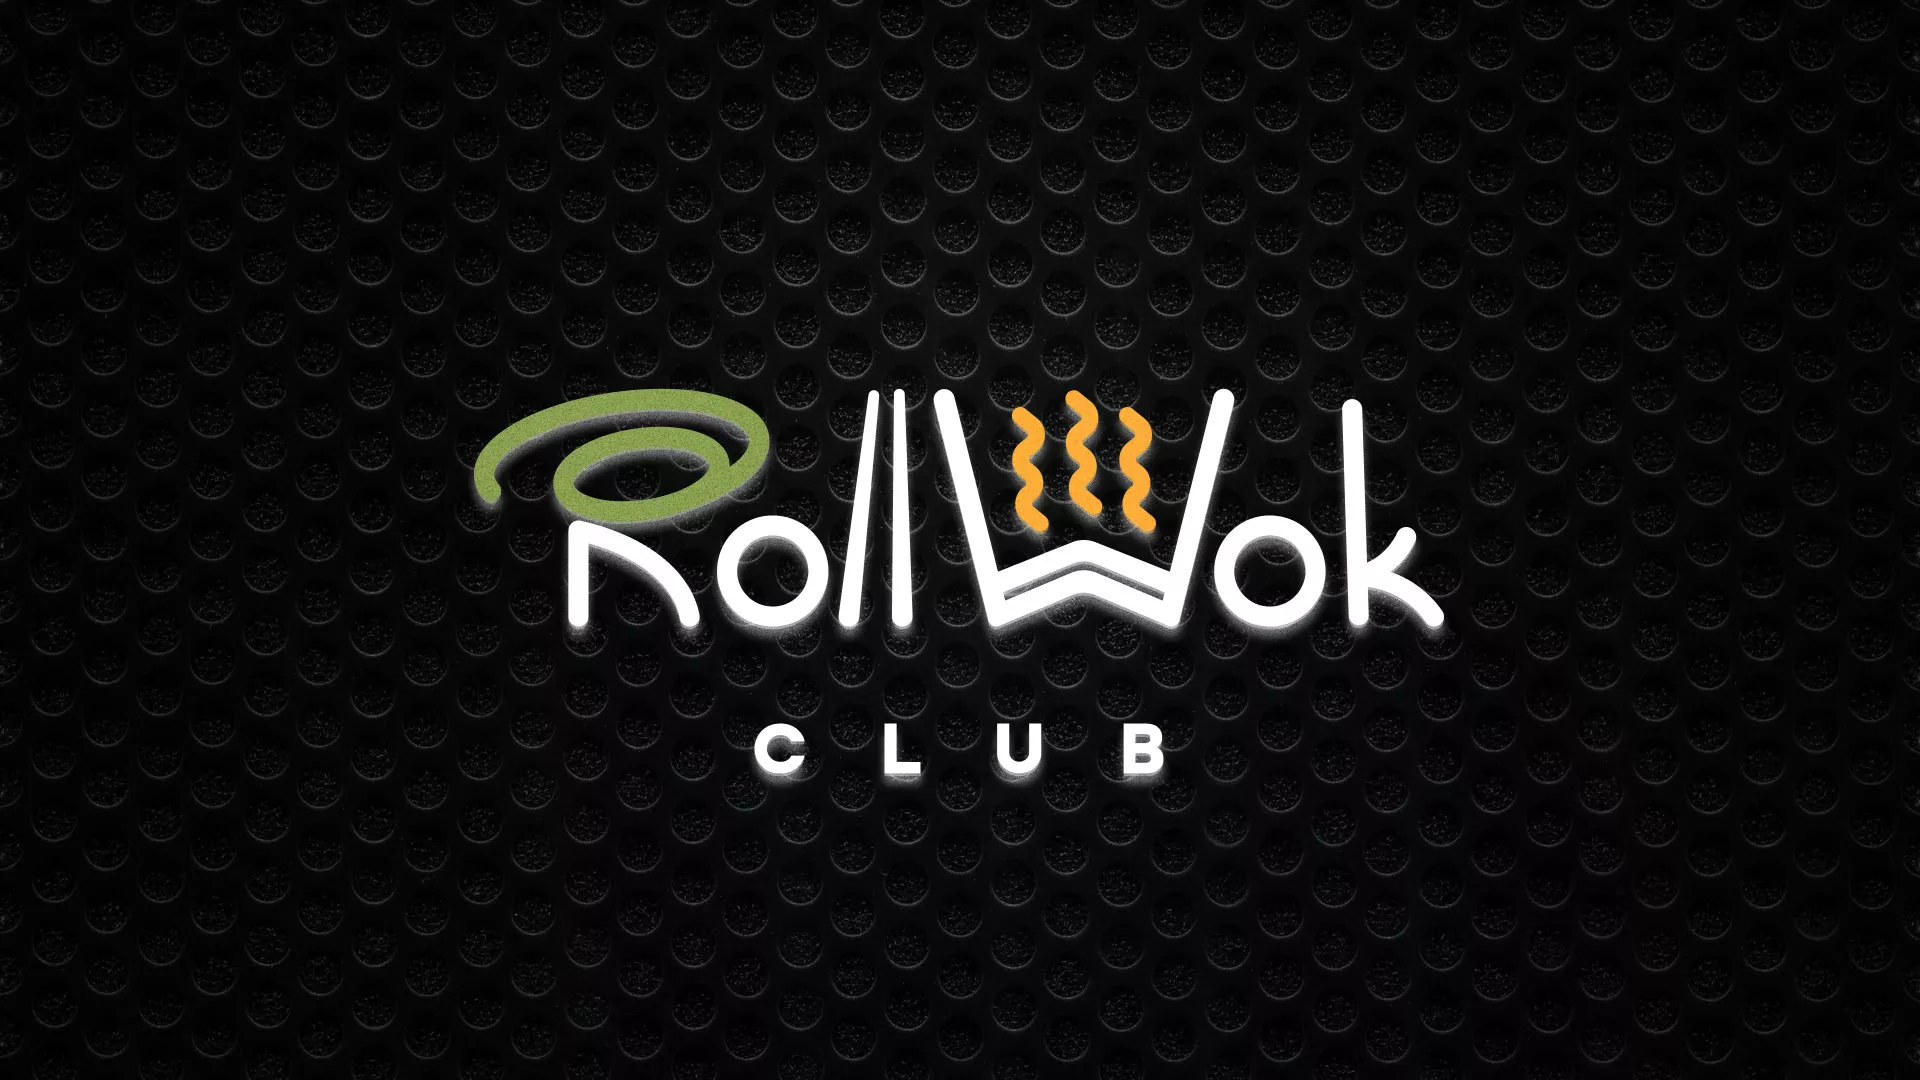 Брендирование торговых точек суши-бара «Roll Wok Club» в Железнодорожном